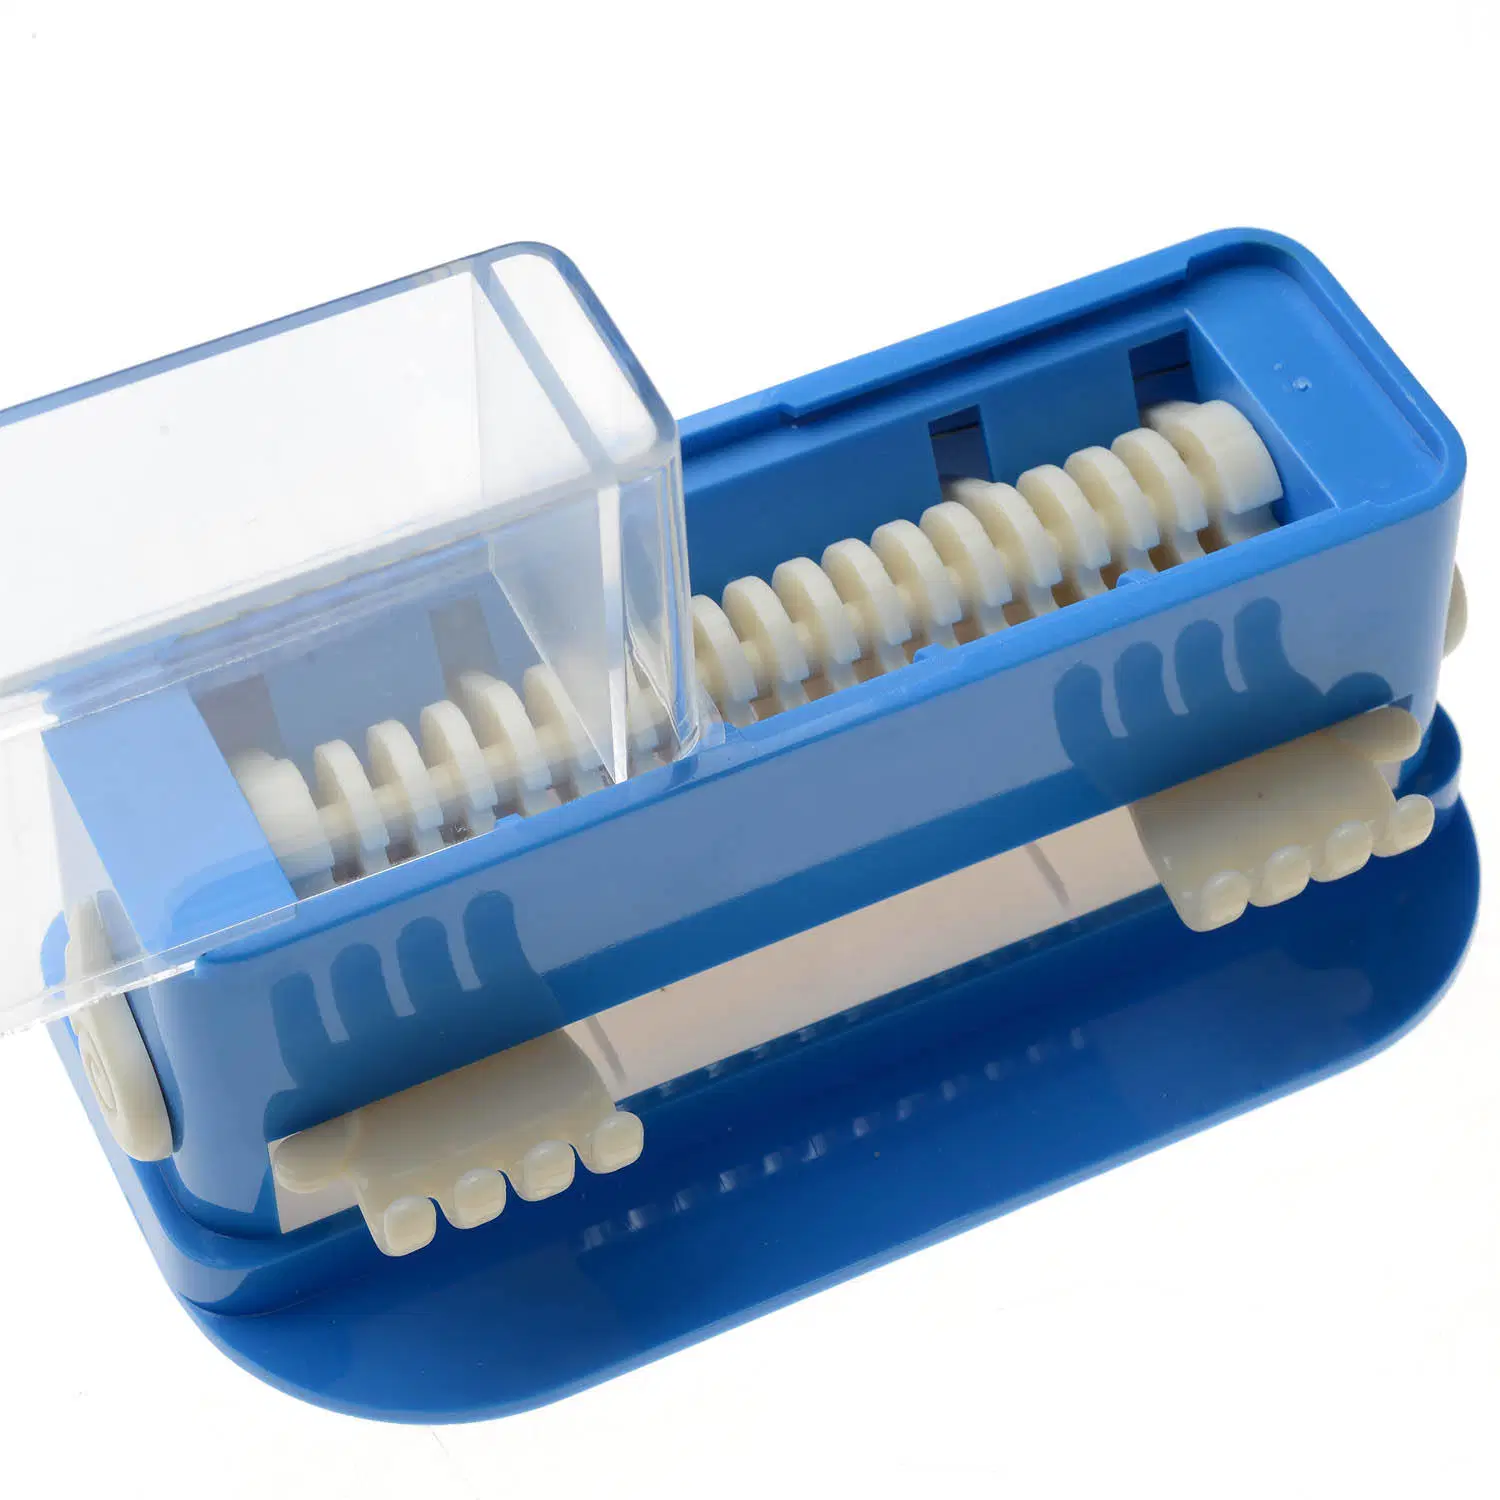 مفرّغ الفرشاة الصغيرة تنظيف الأسنان قطن علبة التنظيف مع أداة وضع 100PCS تلميحات